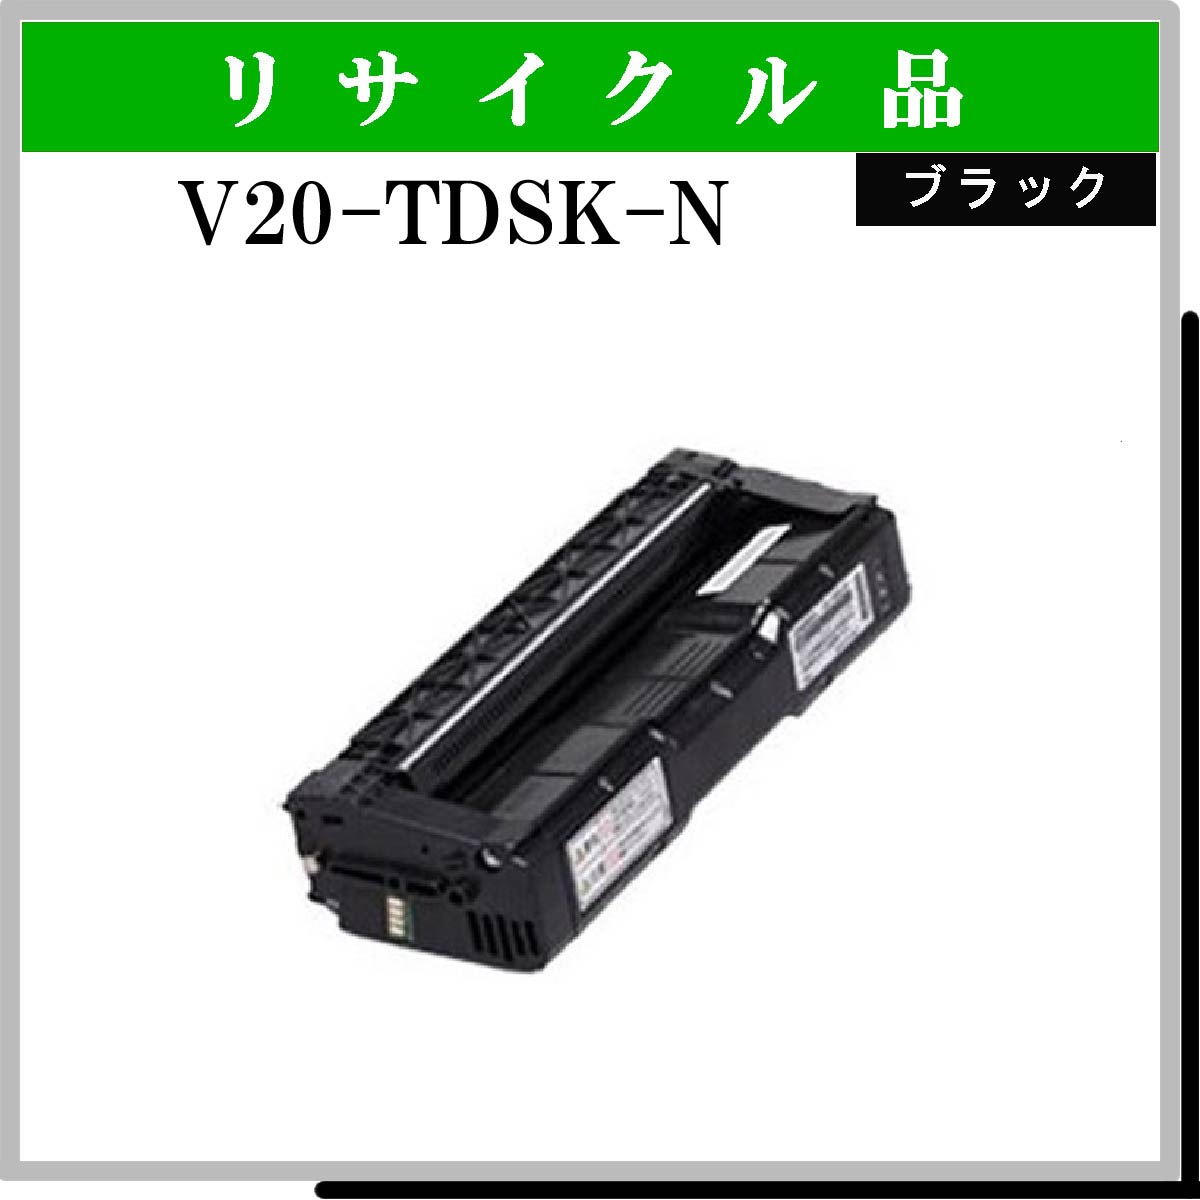 V20-TDSK-N